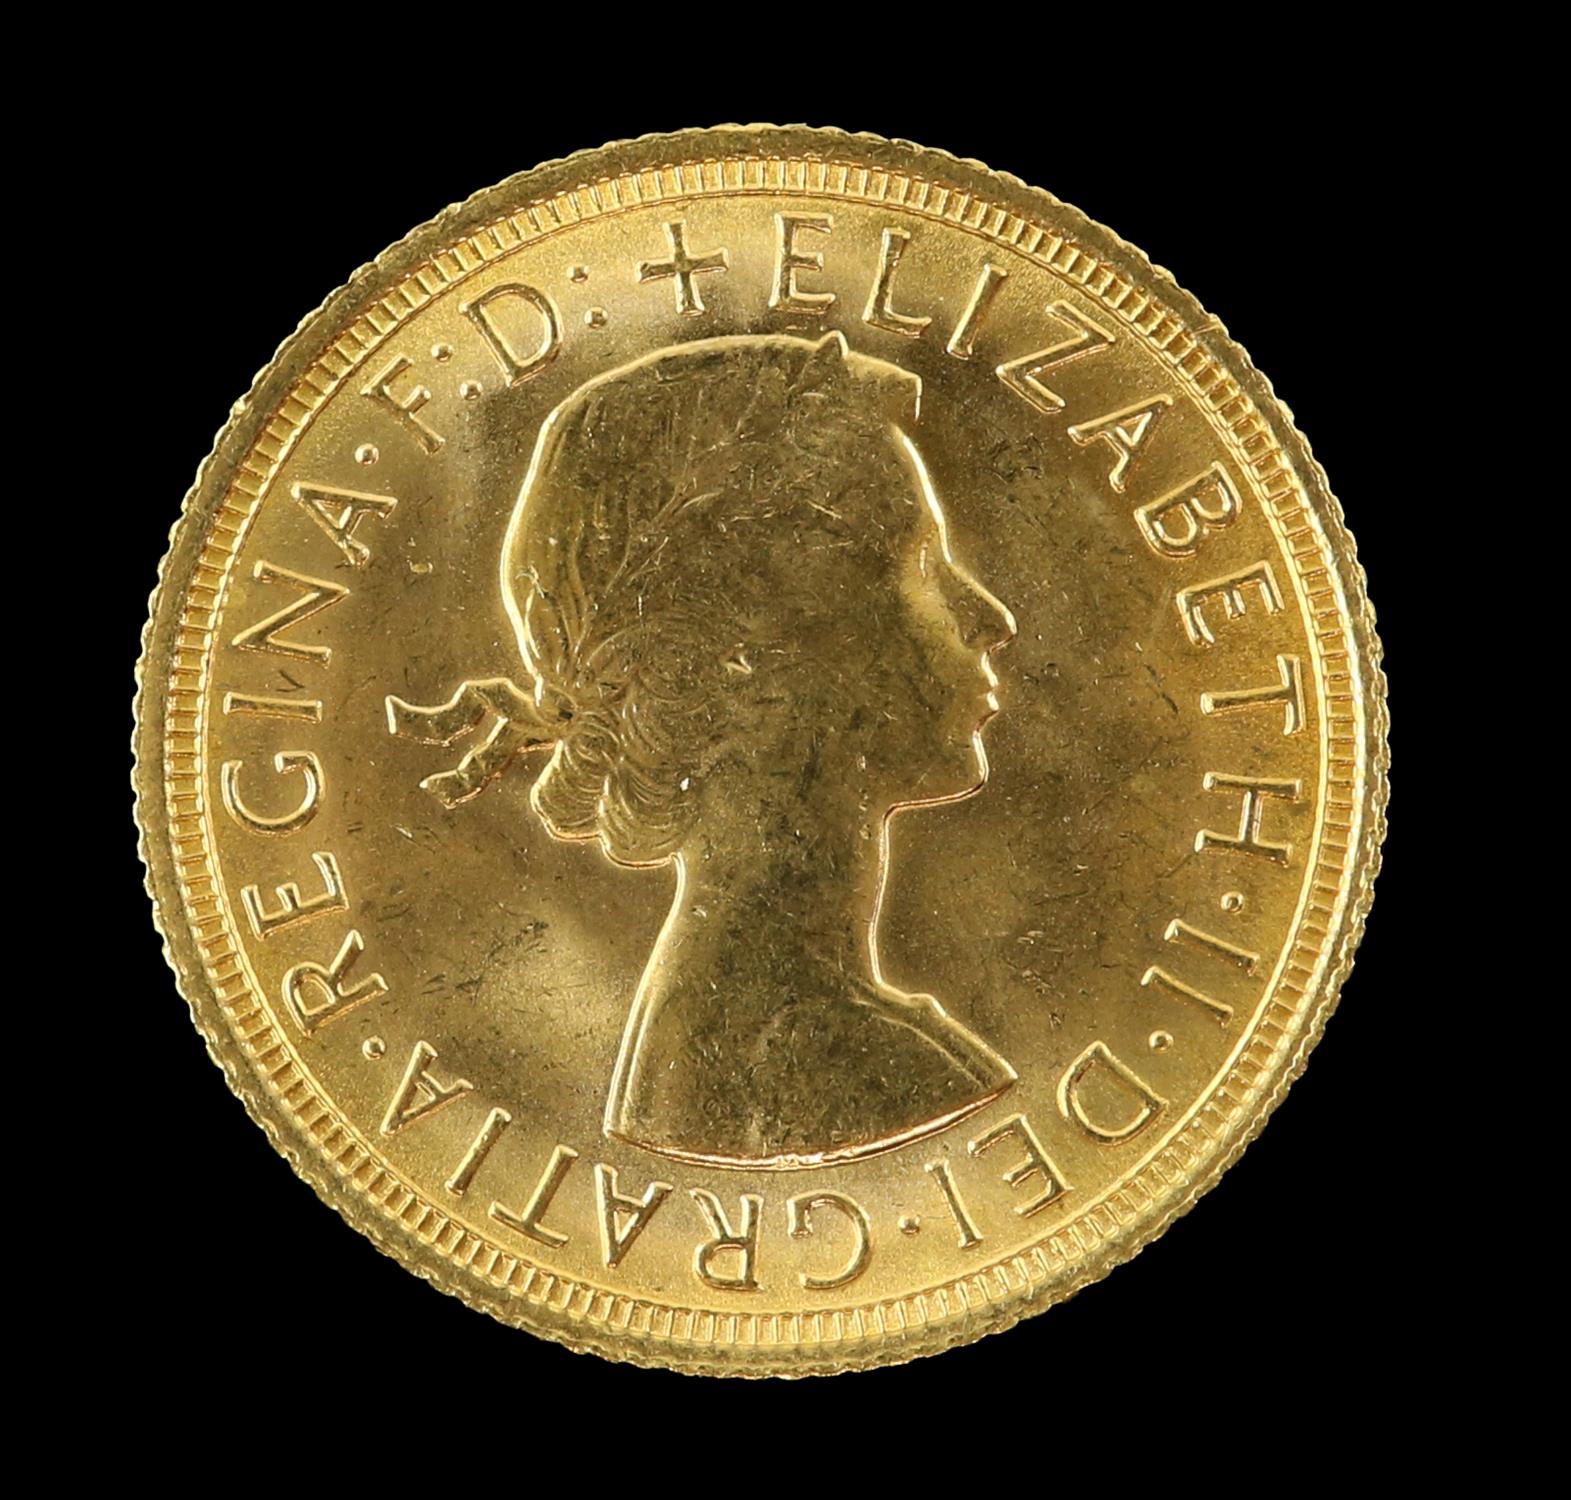 Elizabeth II gold sovereign 1967 - Image 2 of 2